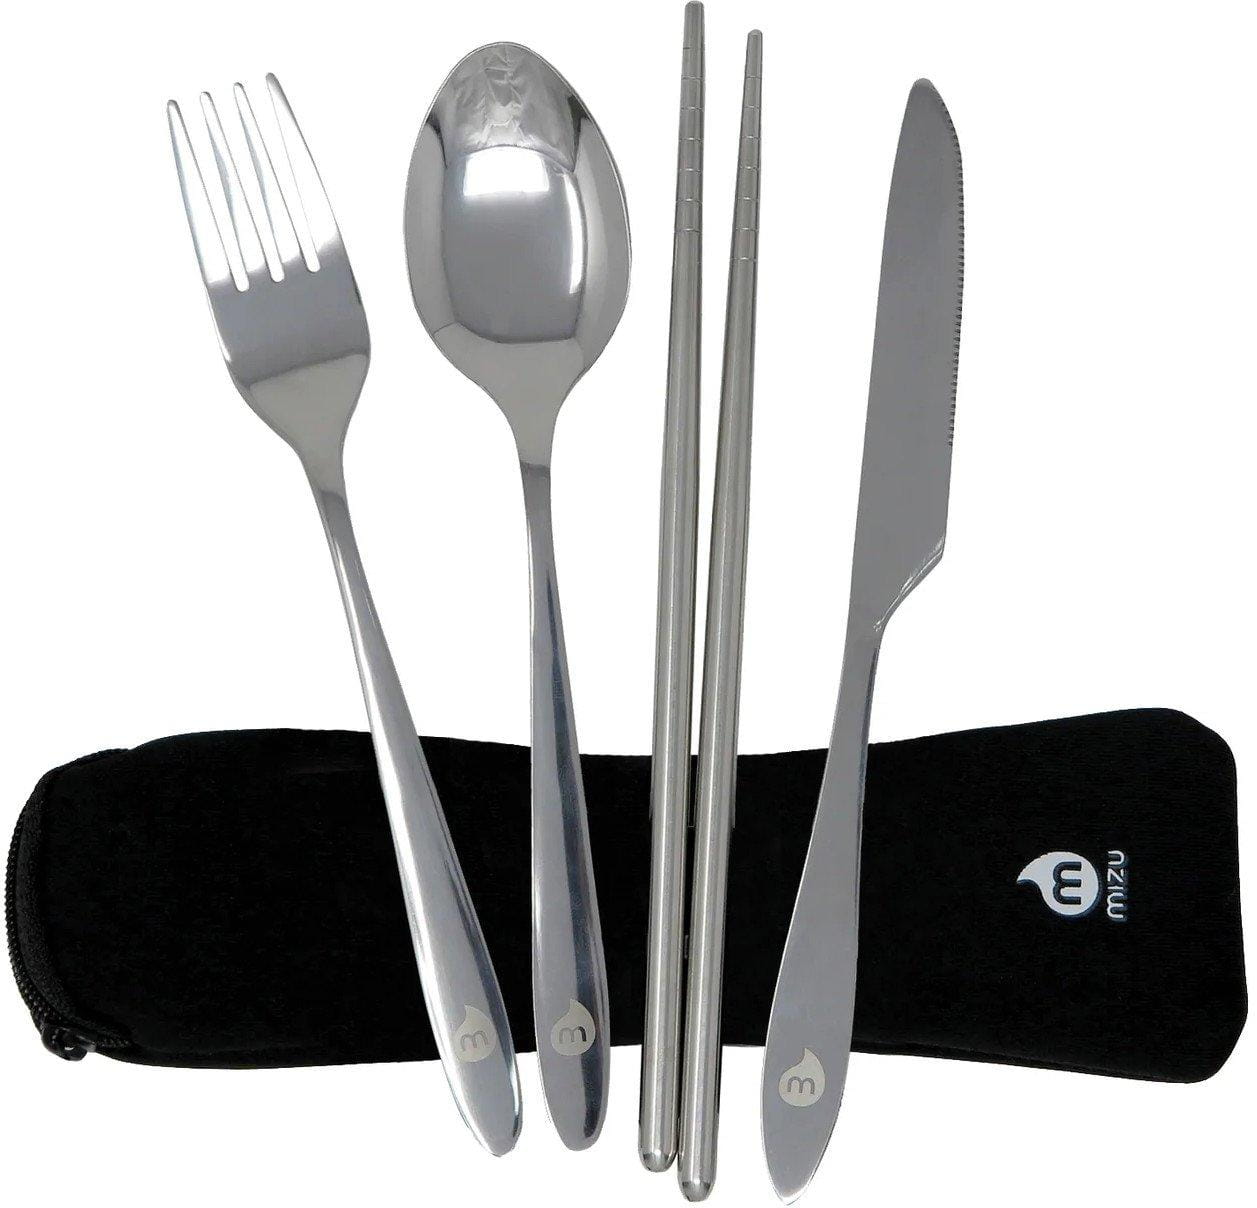 Outdoor-Besteck Mizu Outdoor Cutlery Set